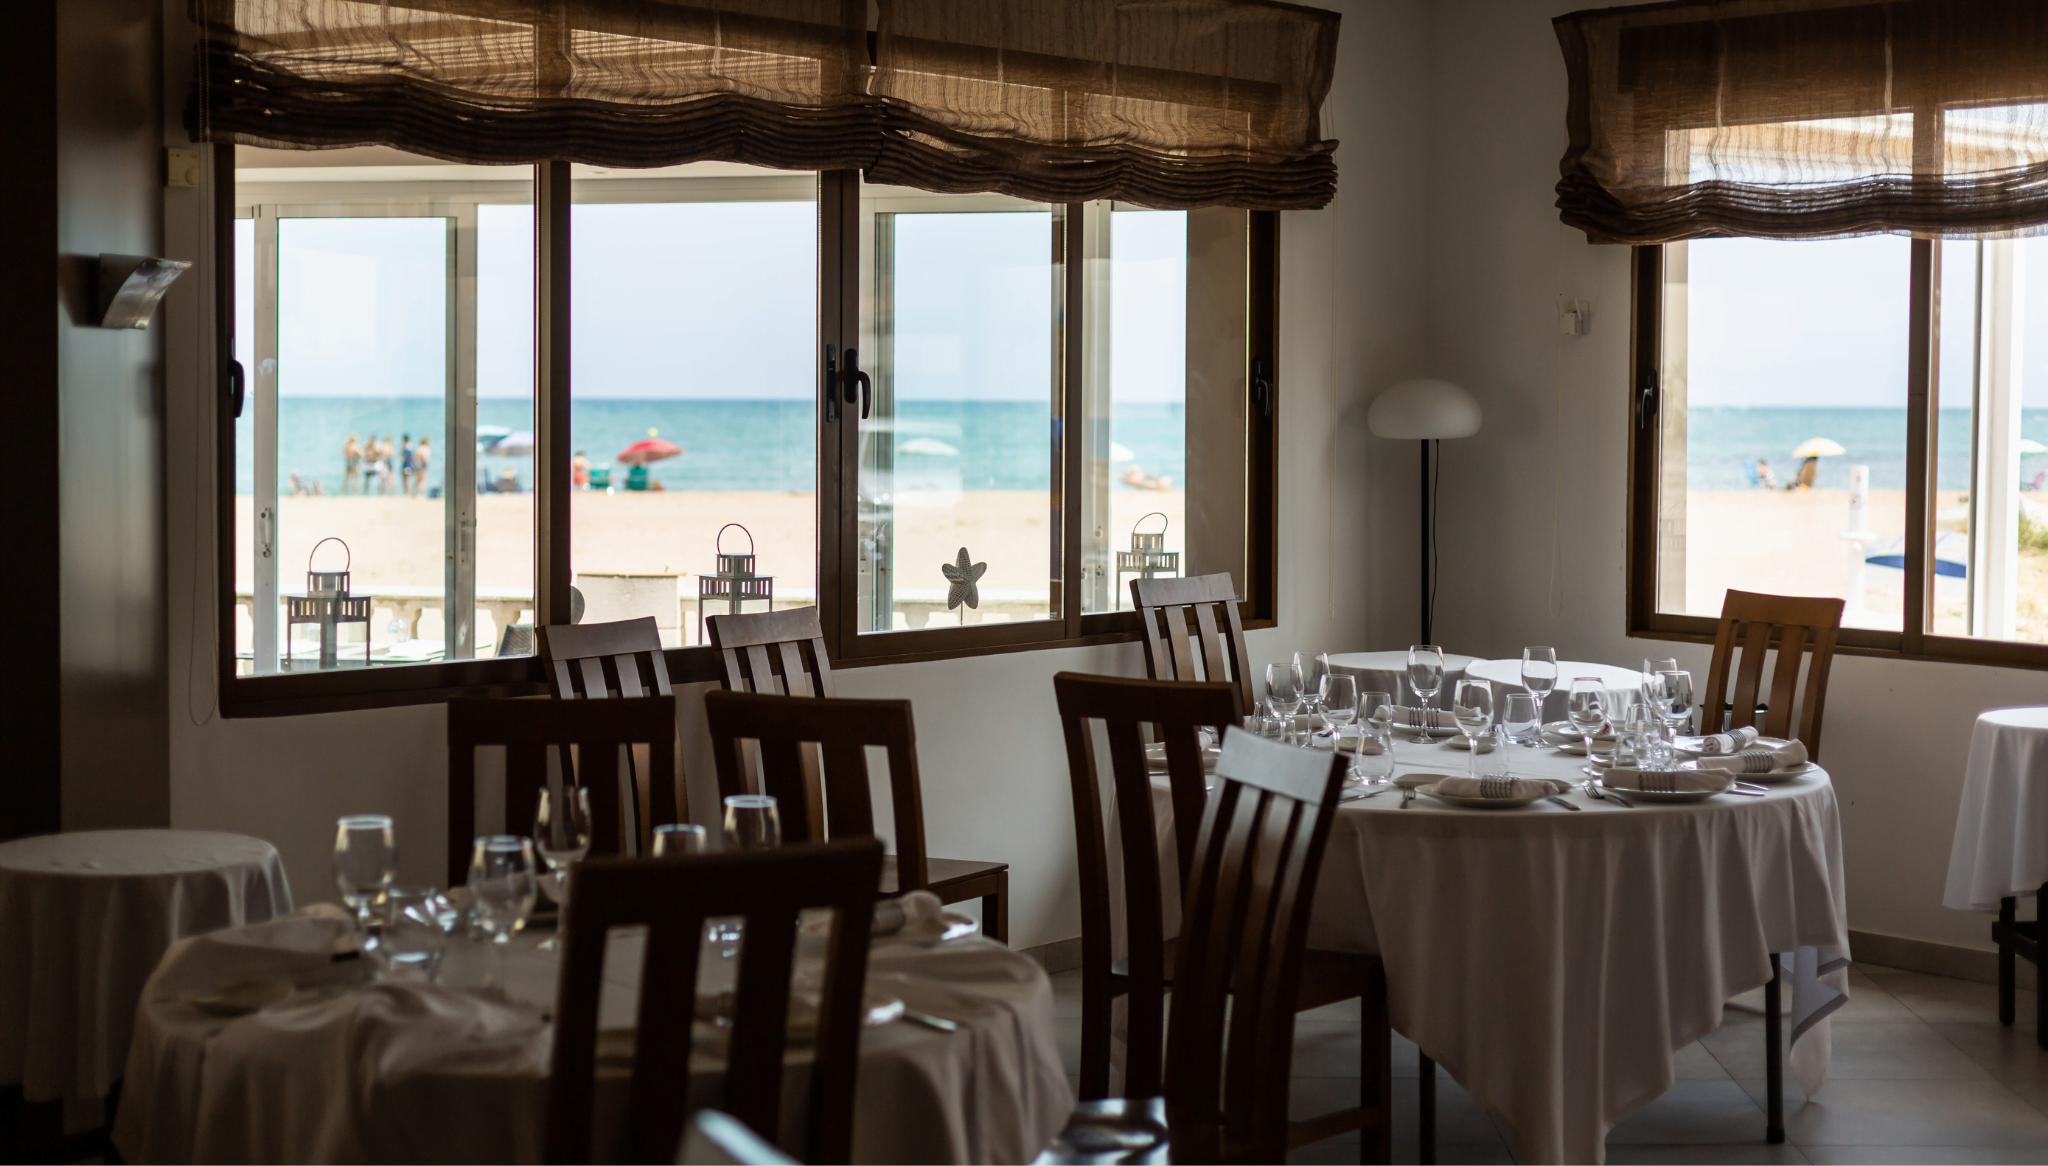 Mesas del restaurante con vistas al mar